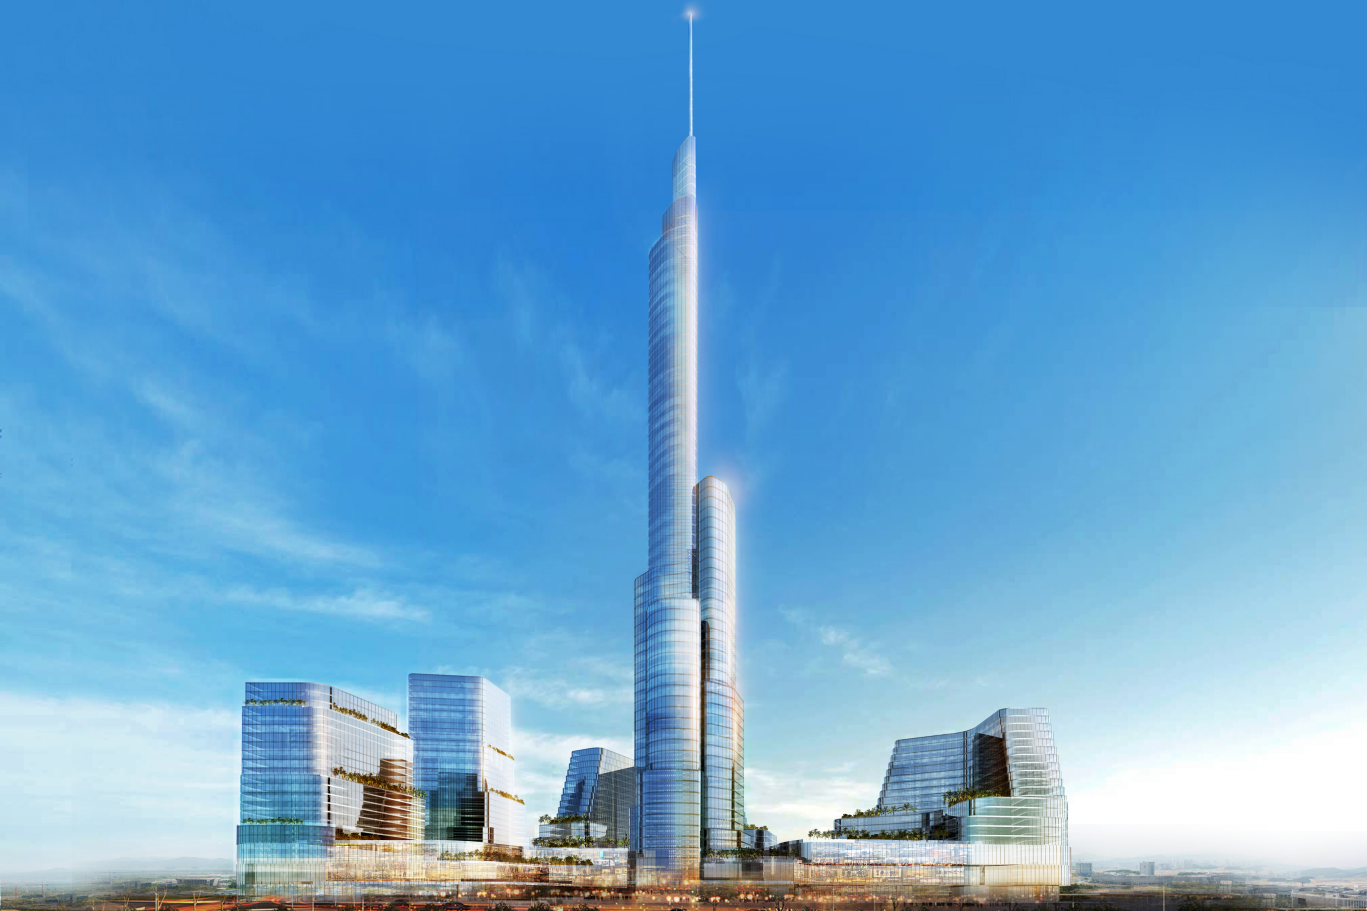 ASYA Design - Tower of power facade